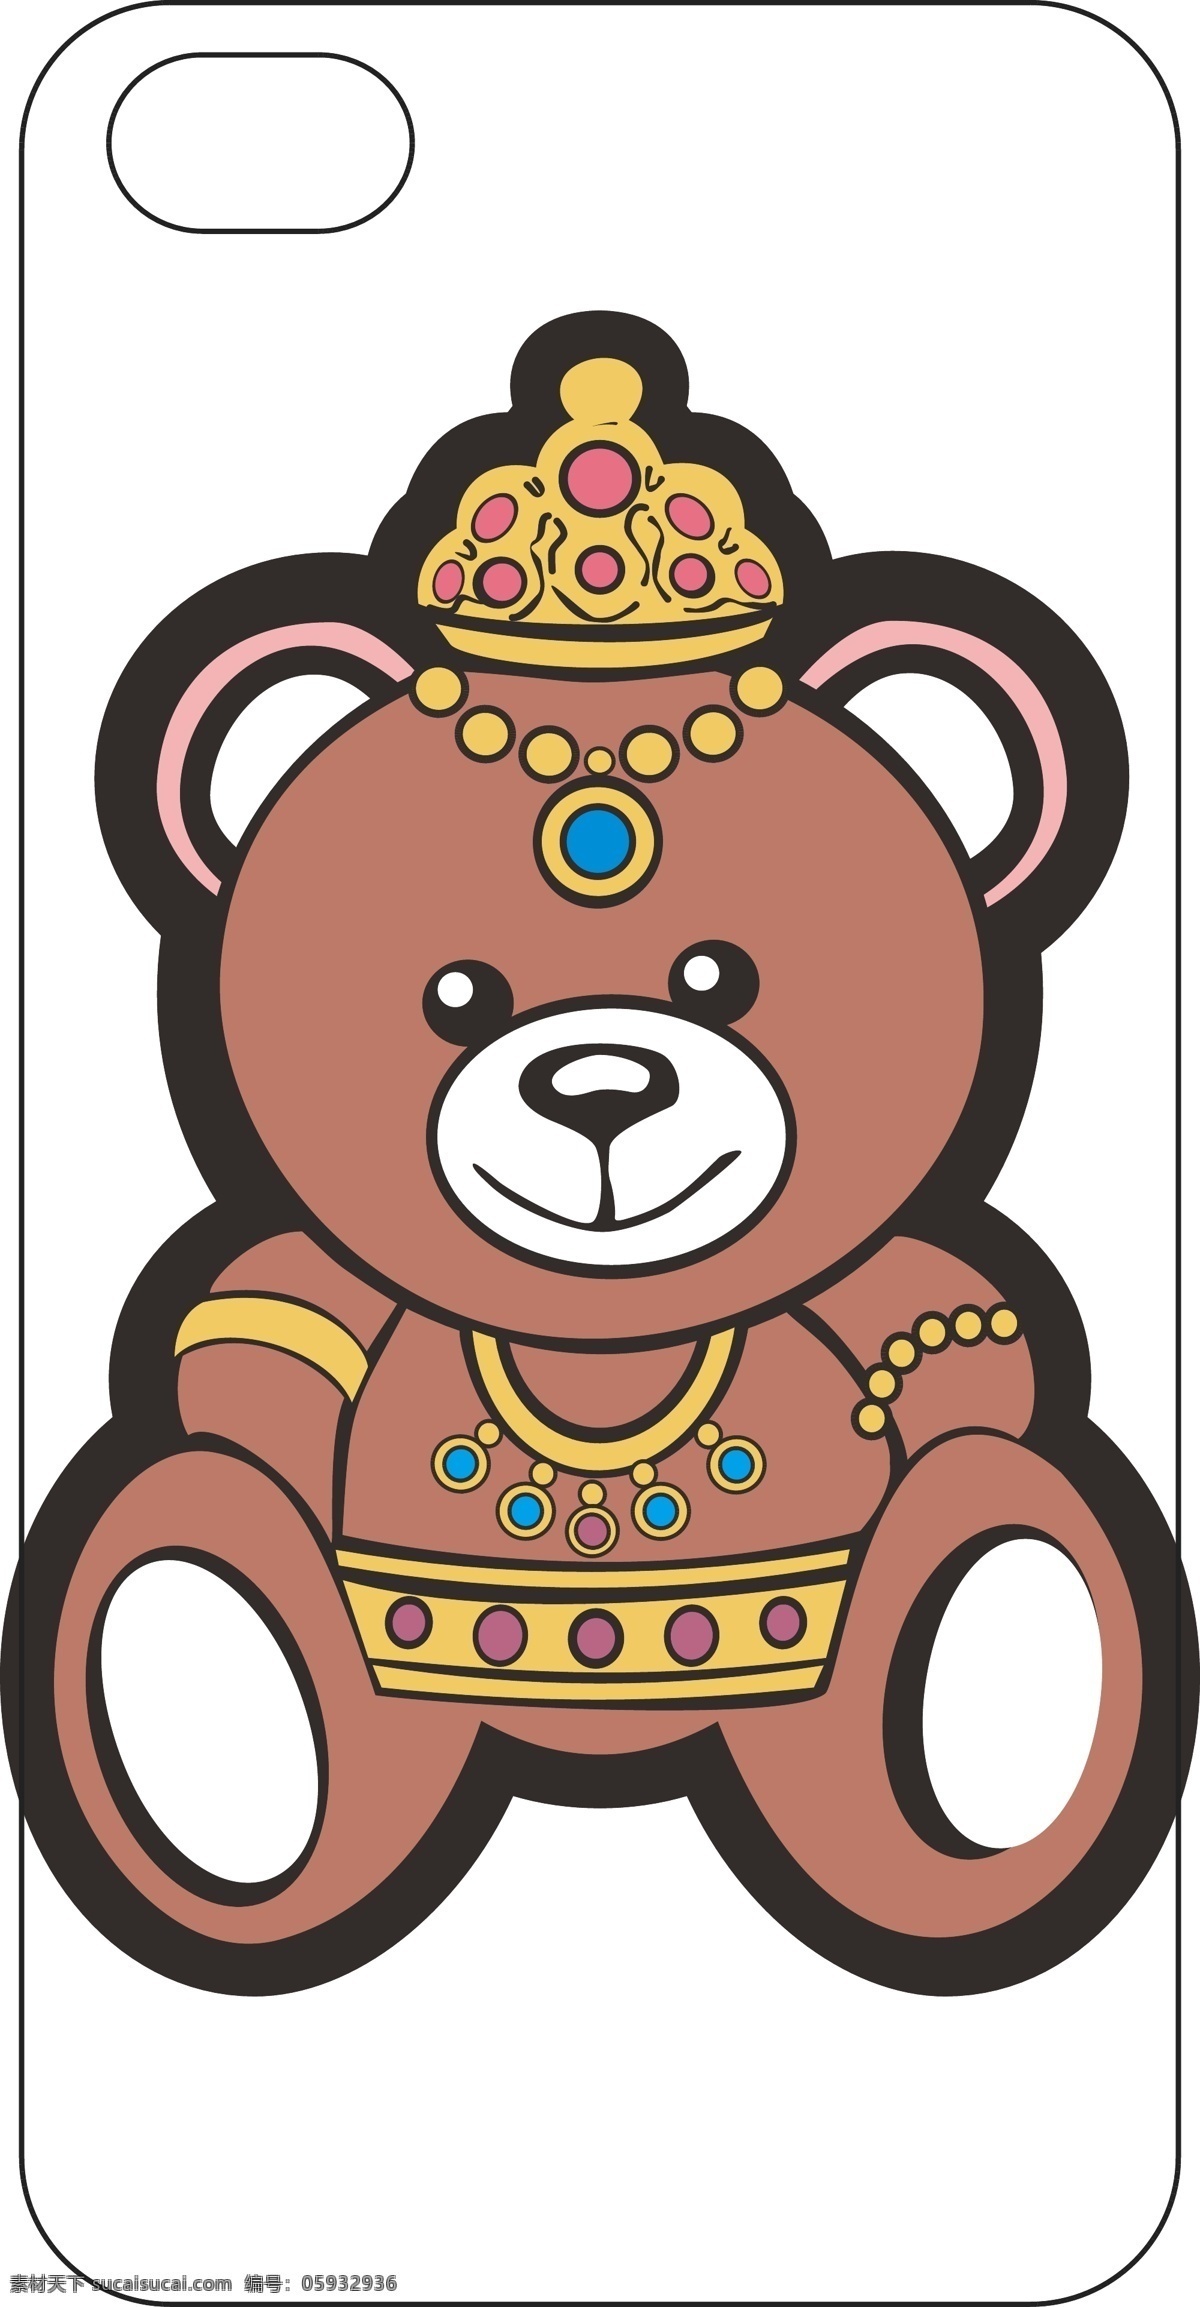 小熊手机壳 黄冠 钻石 项链 腰带 小熊 可爱 棕色 手链 手袋 包装设计 动漫动画 动漫人物